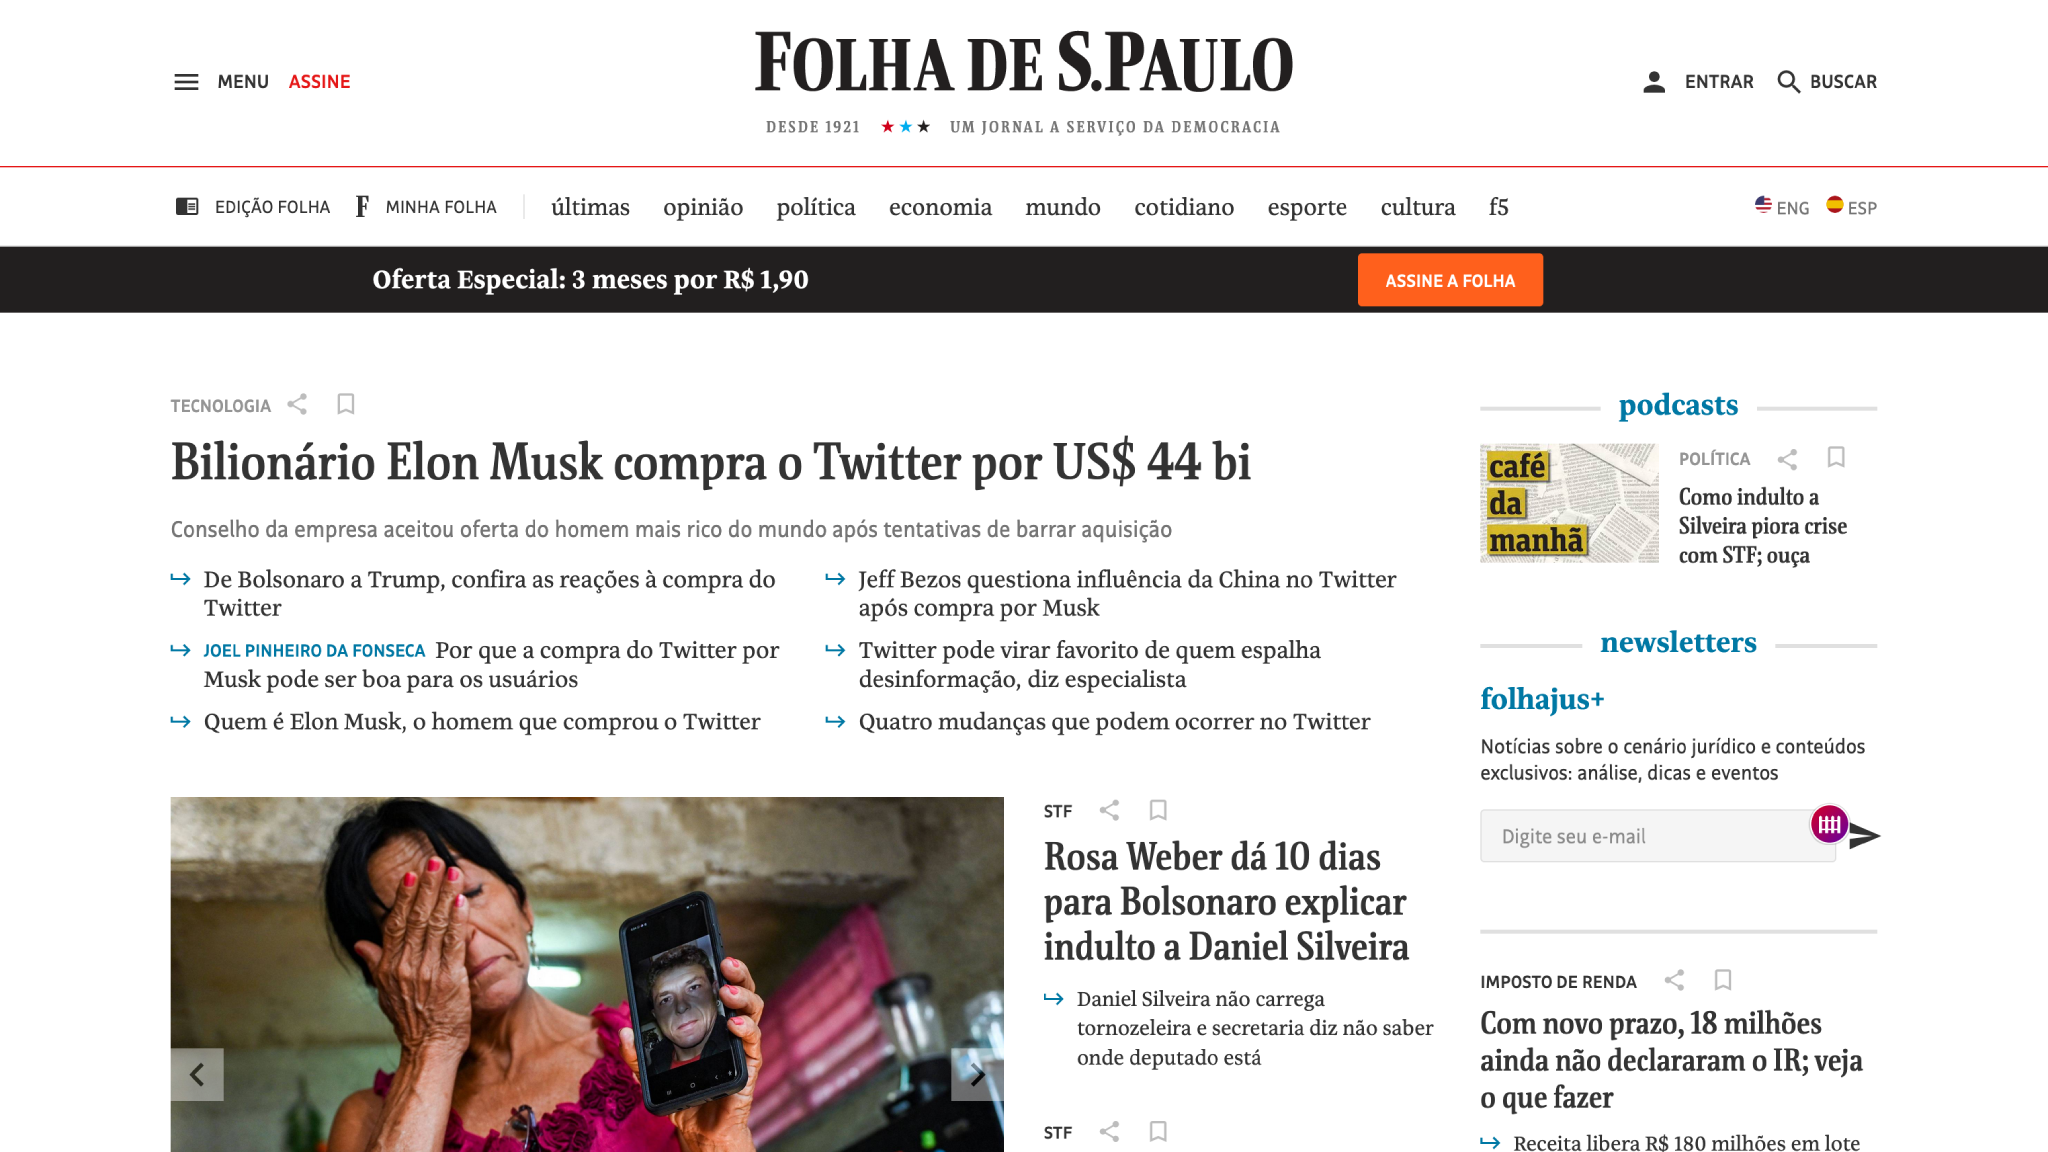 У сайта Folha de S Paulo три версии: на португальском (с самым большим рубрикатором), испанском и английском языках